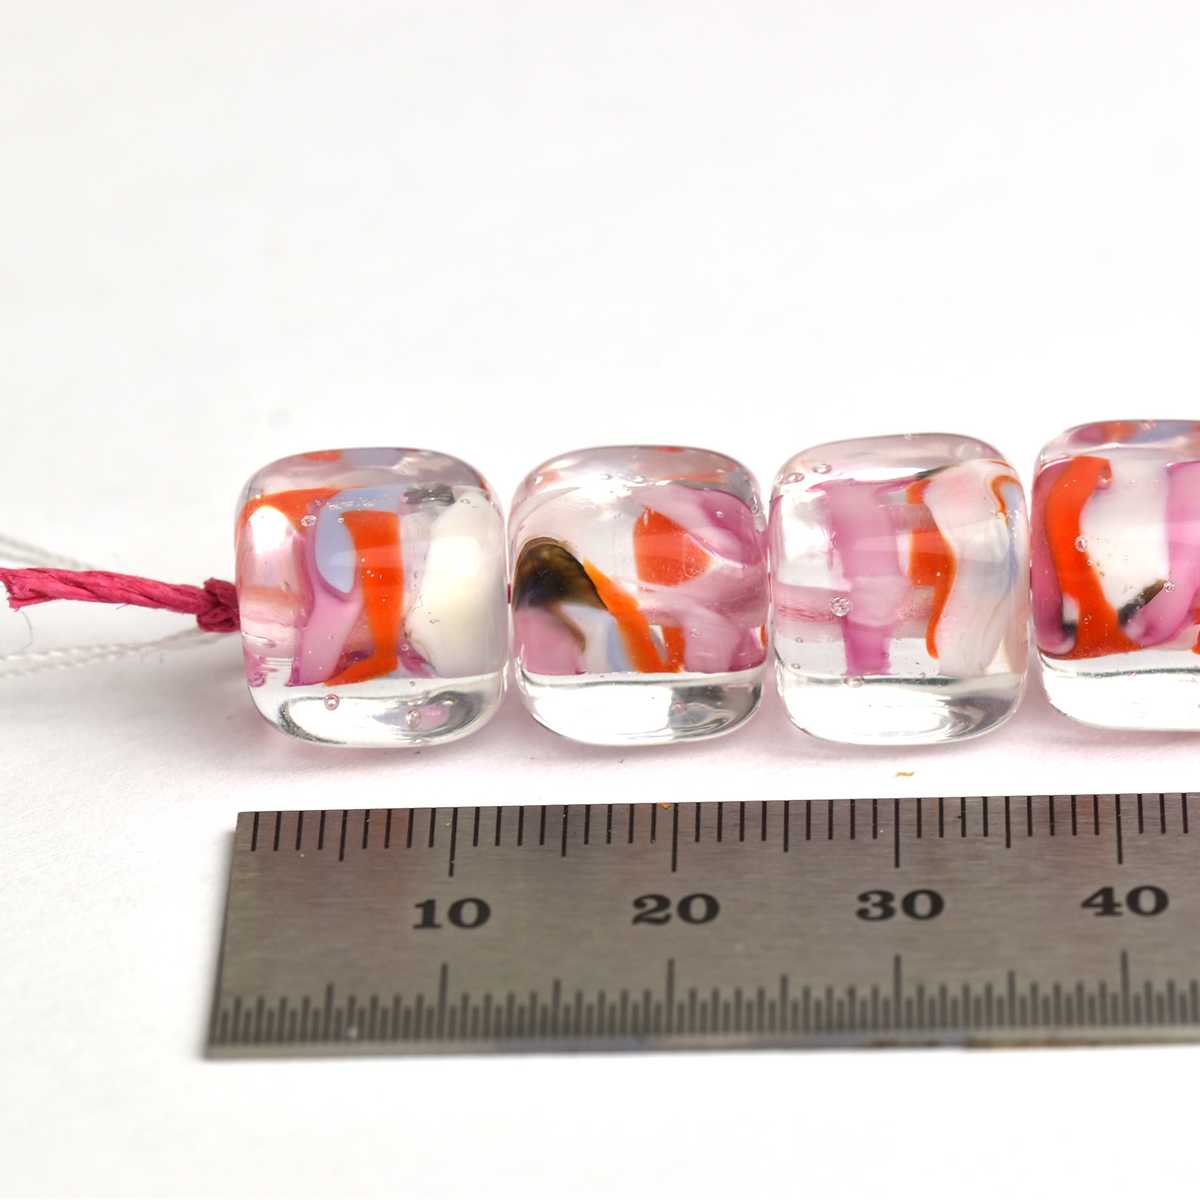 Ensemble de 5 perles cubes orange, rose et rouges  🖤 Fabrication française 🖤